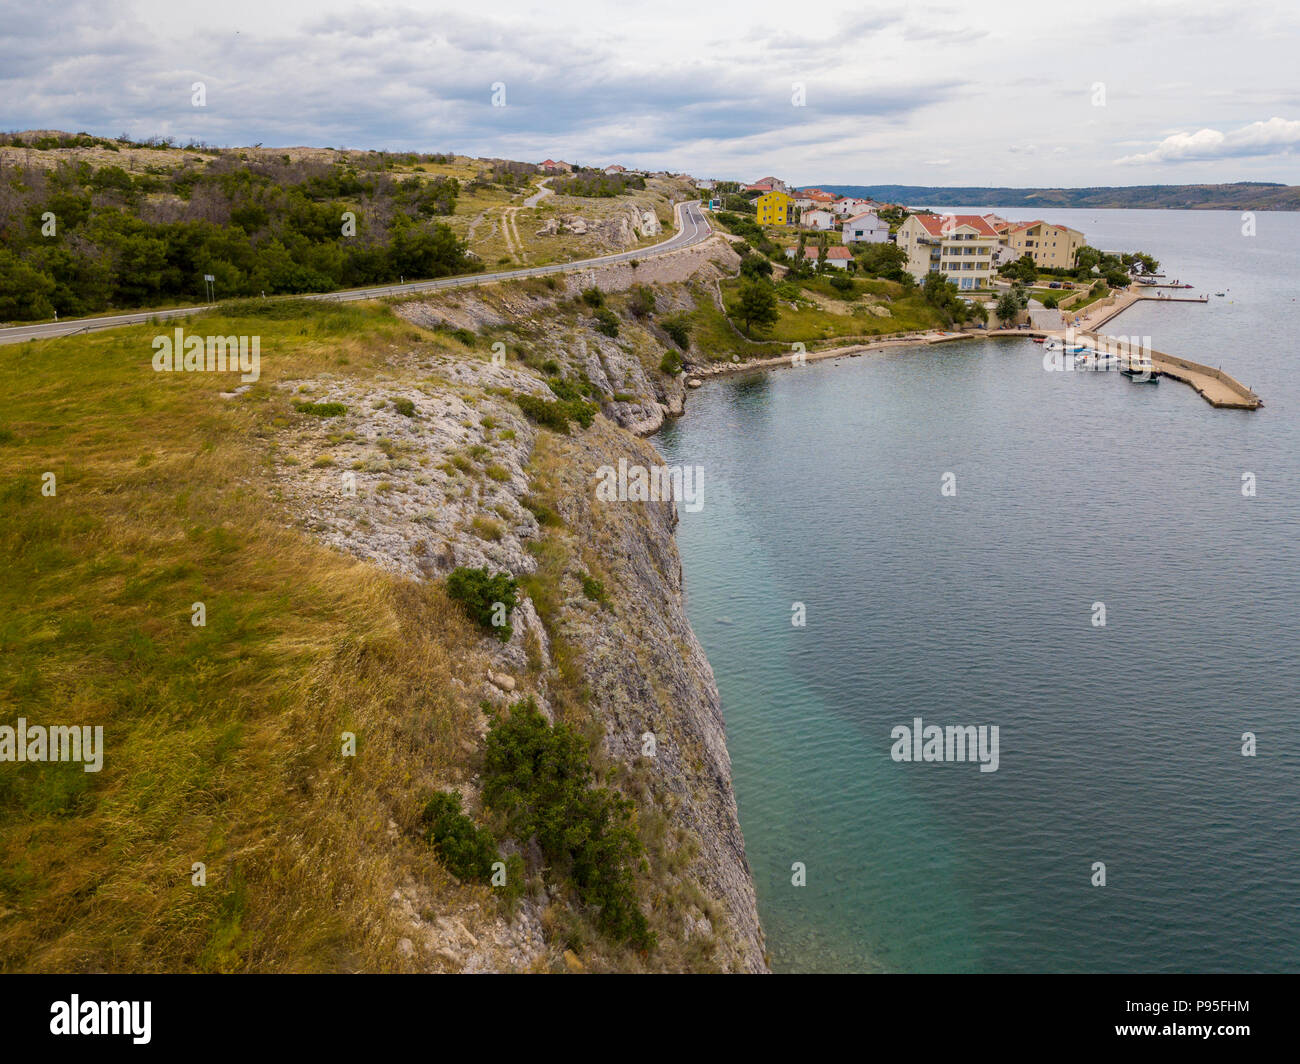 Vista aerea dell'isola di Pag, Croazia, le strade croate e la fascia costiera, le case e gli edifici della cittadina di Rtina. Scogliera affacciato sul mare Foto Stock